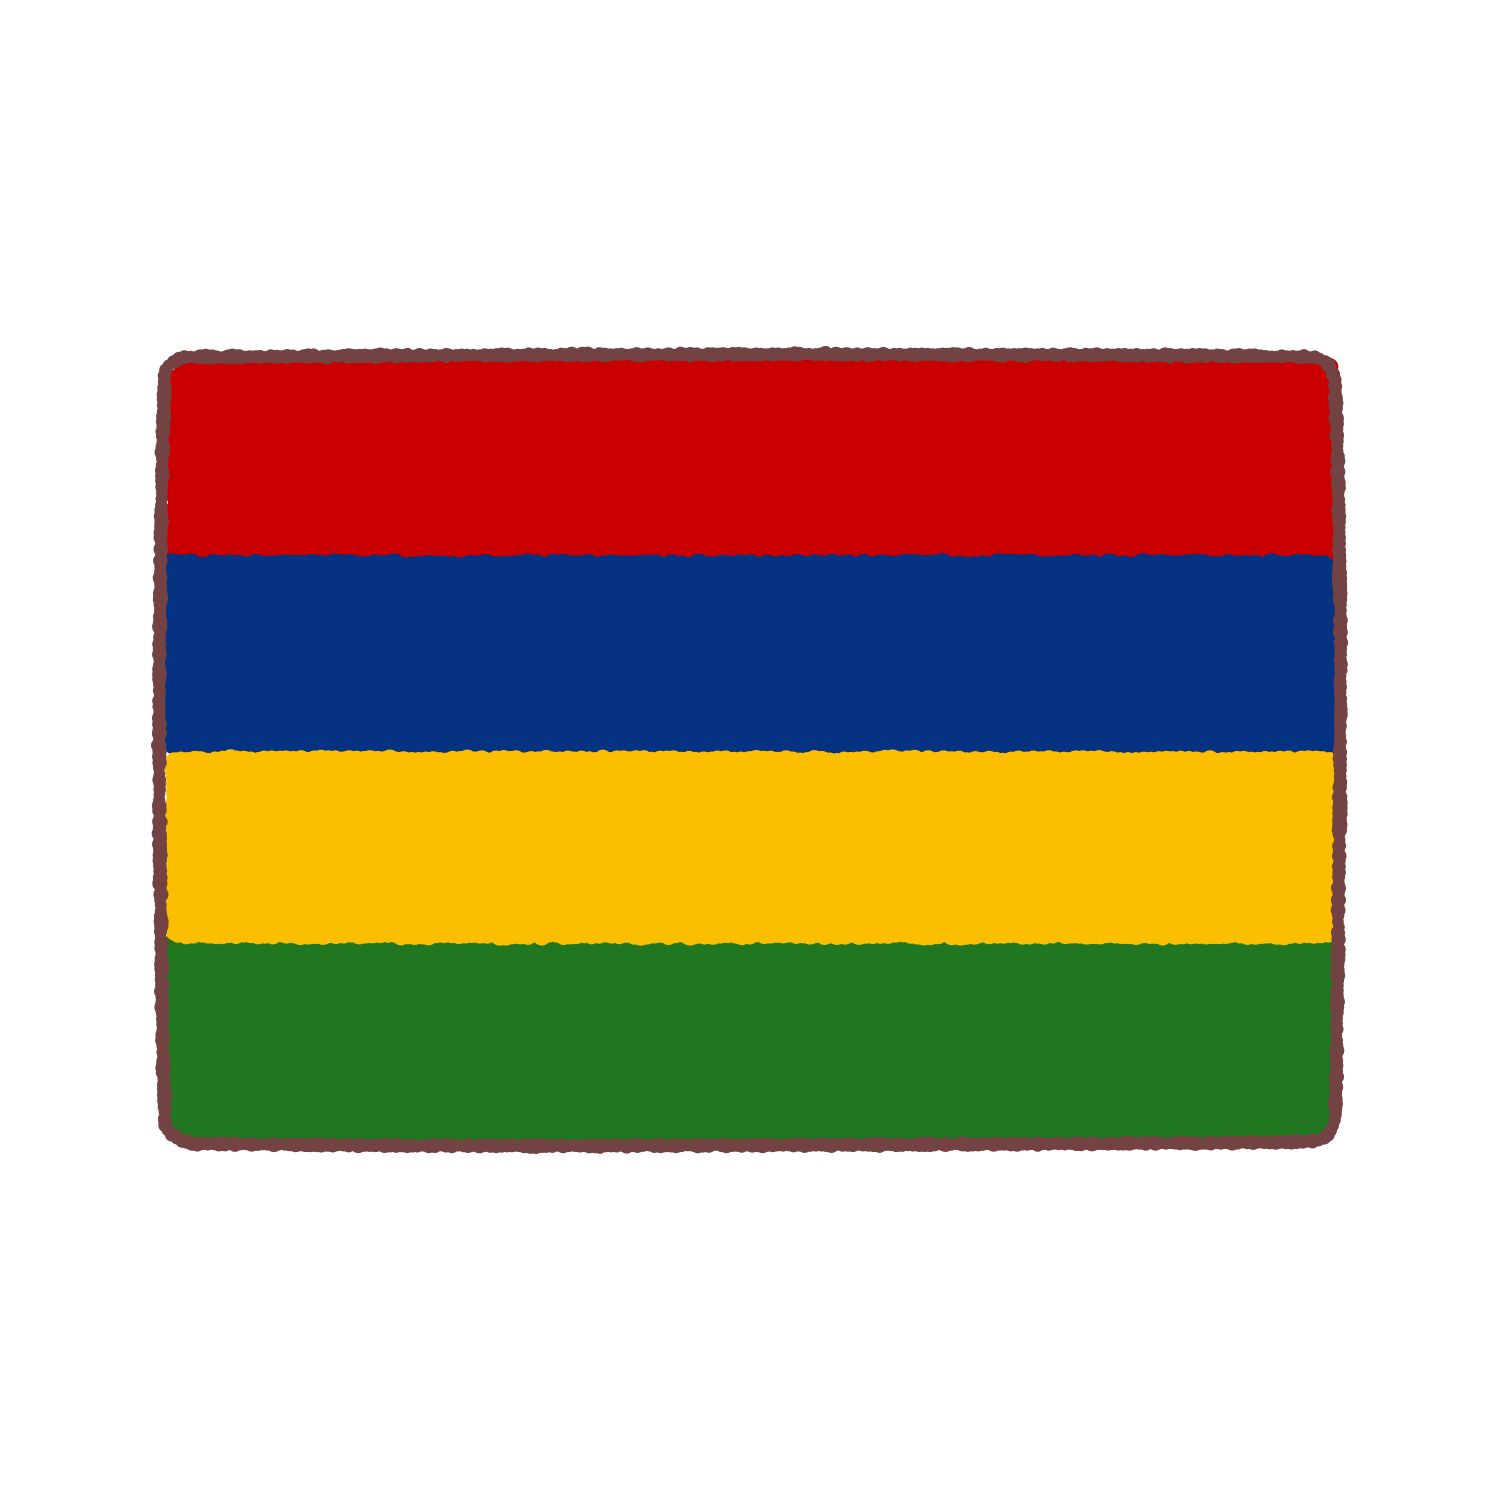 モーリシャス国旗のイラスト